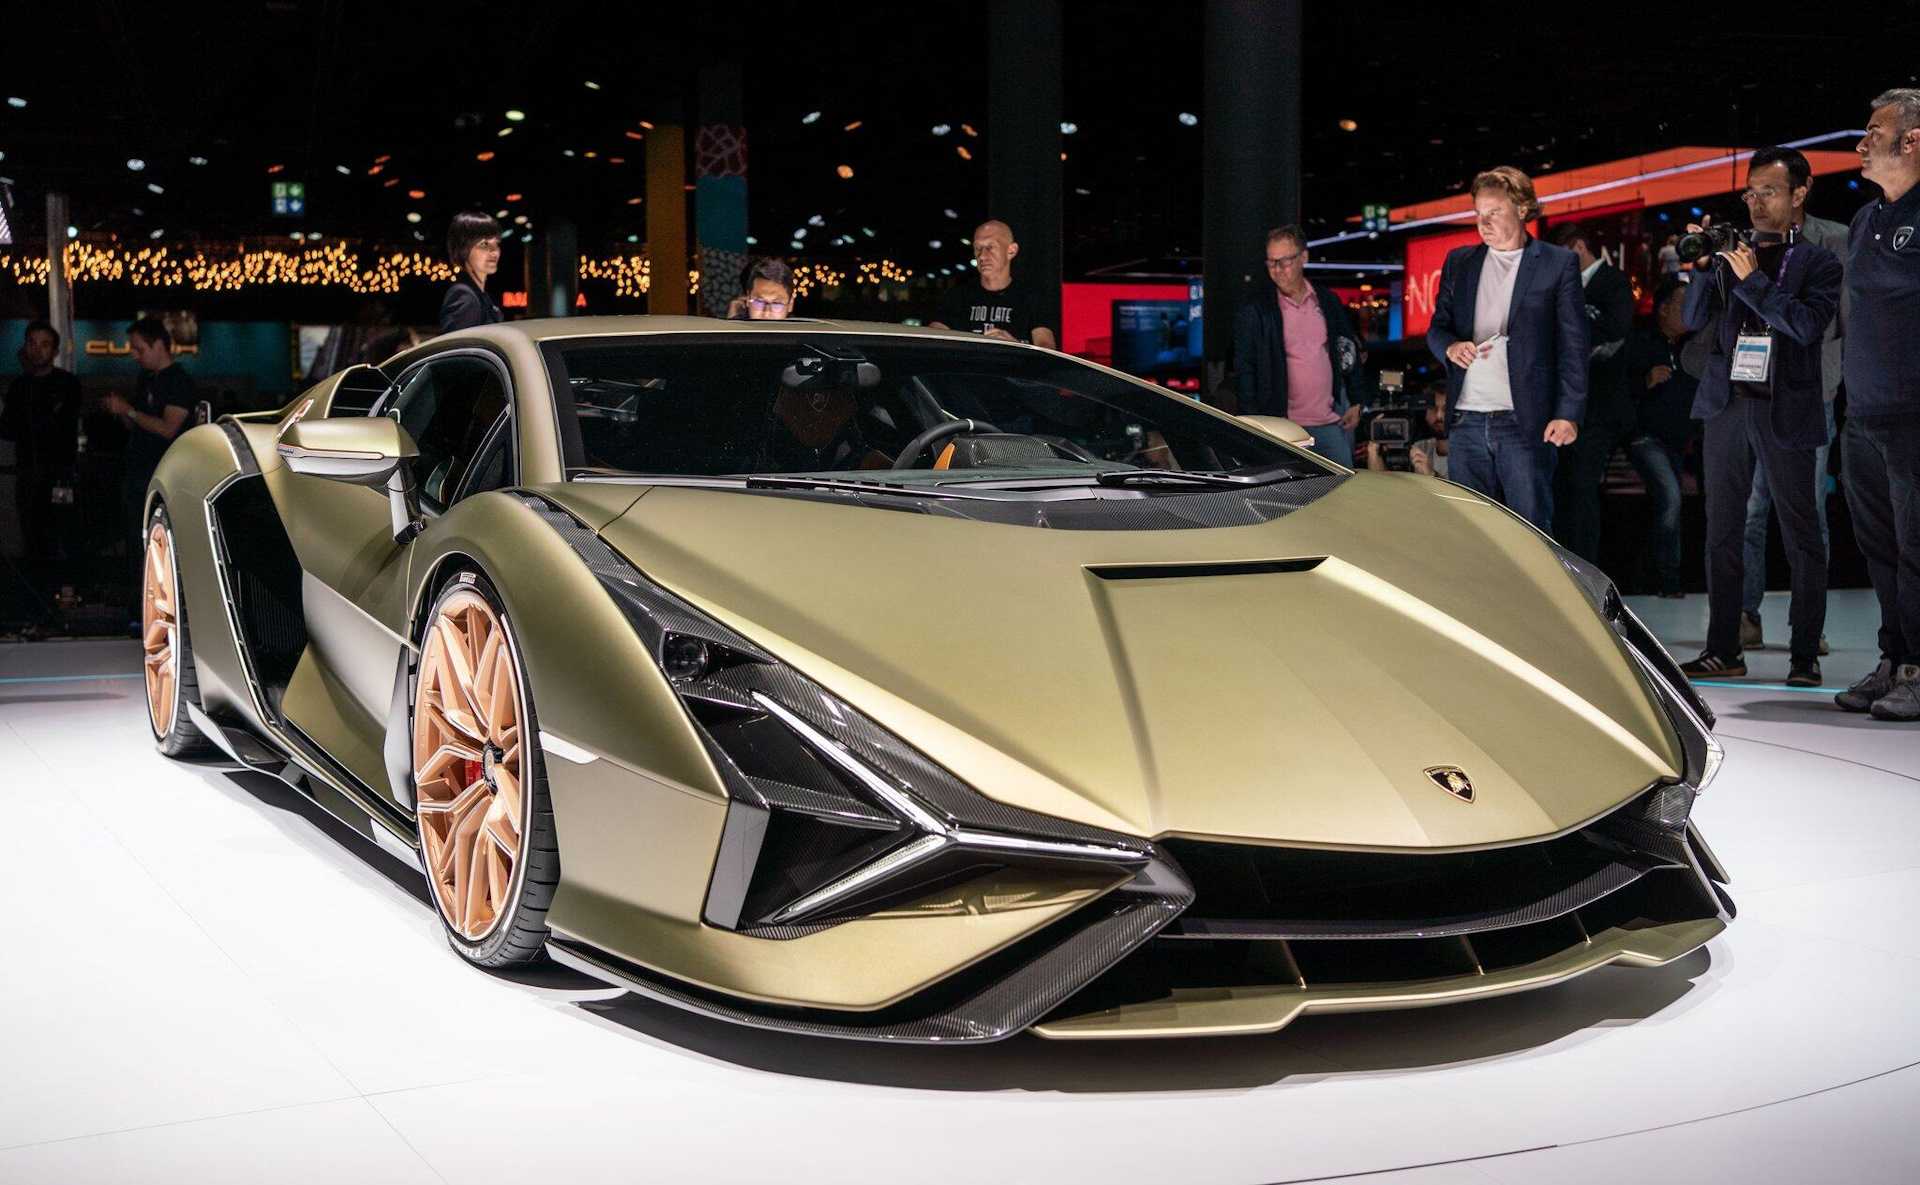 В 2022 году модели Lamborghini Urus исполнилось пять лет, что производитель отметил выпуском сразу двух рестайлинговых версий